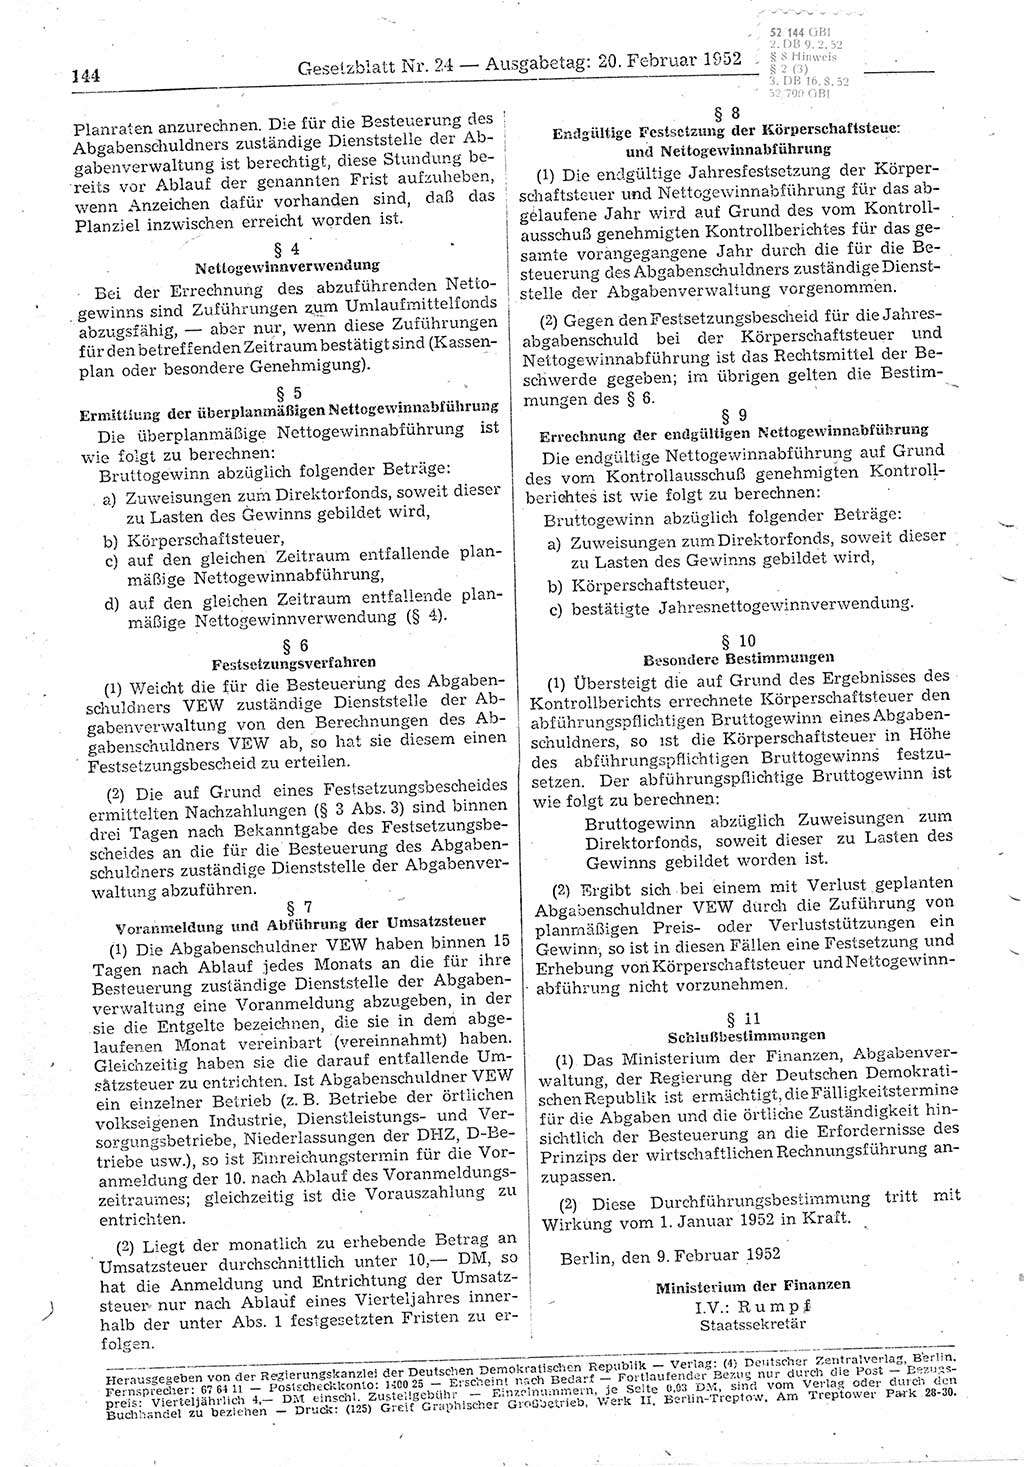 Gesetzblatt (GBl.) der Deutschen Demokratischen Republik (DDR) 1952, Seite 144 (GBl. DDR 1952, S. 144)